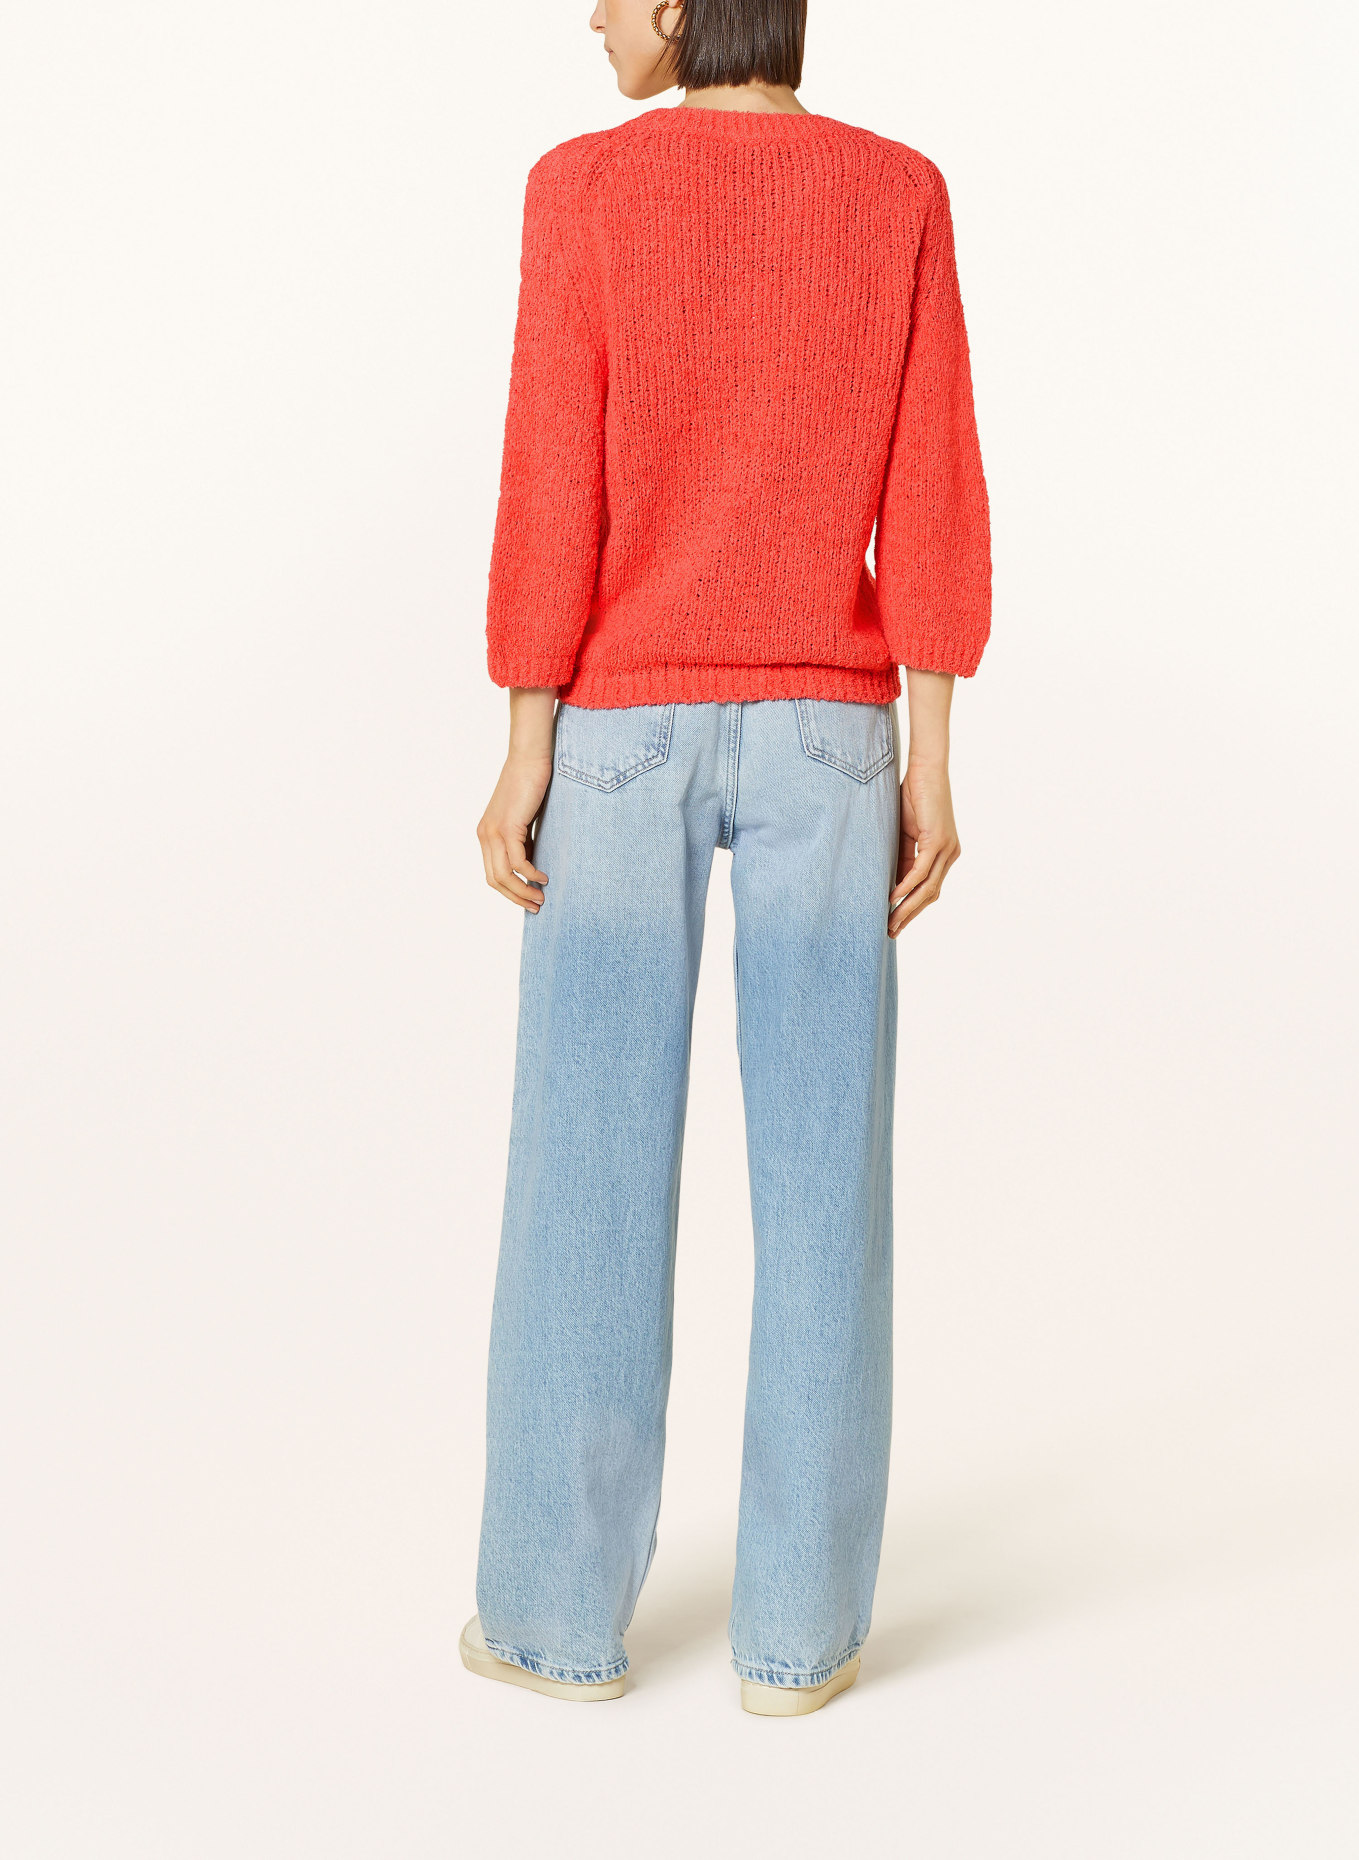 monari Sweater, Color: SALMON (Image 3)